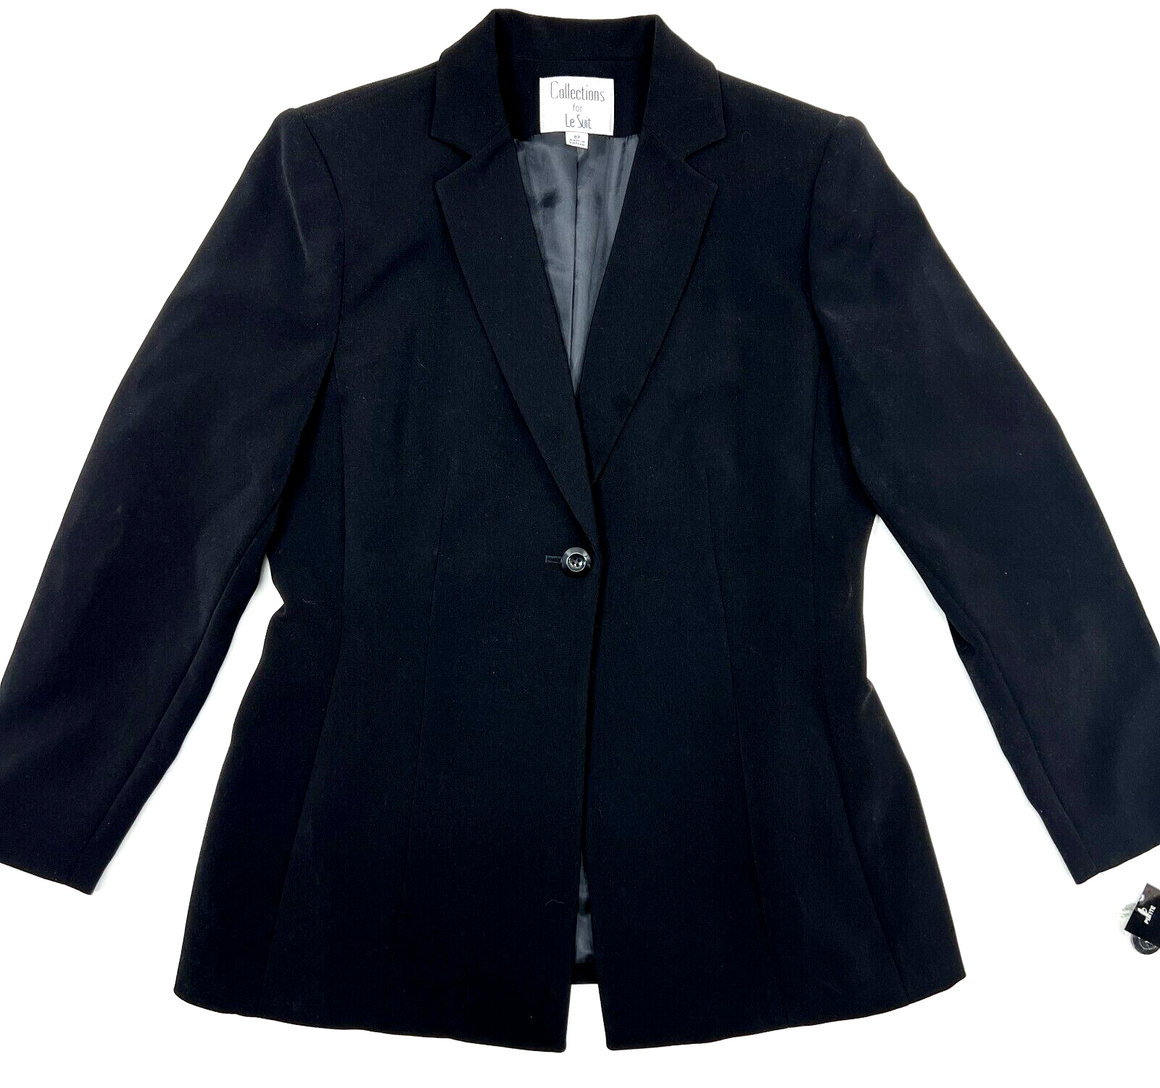 Charcoal Grey Modern Fit Men's Suit - One Button, Peak Lapel, Vested